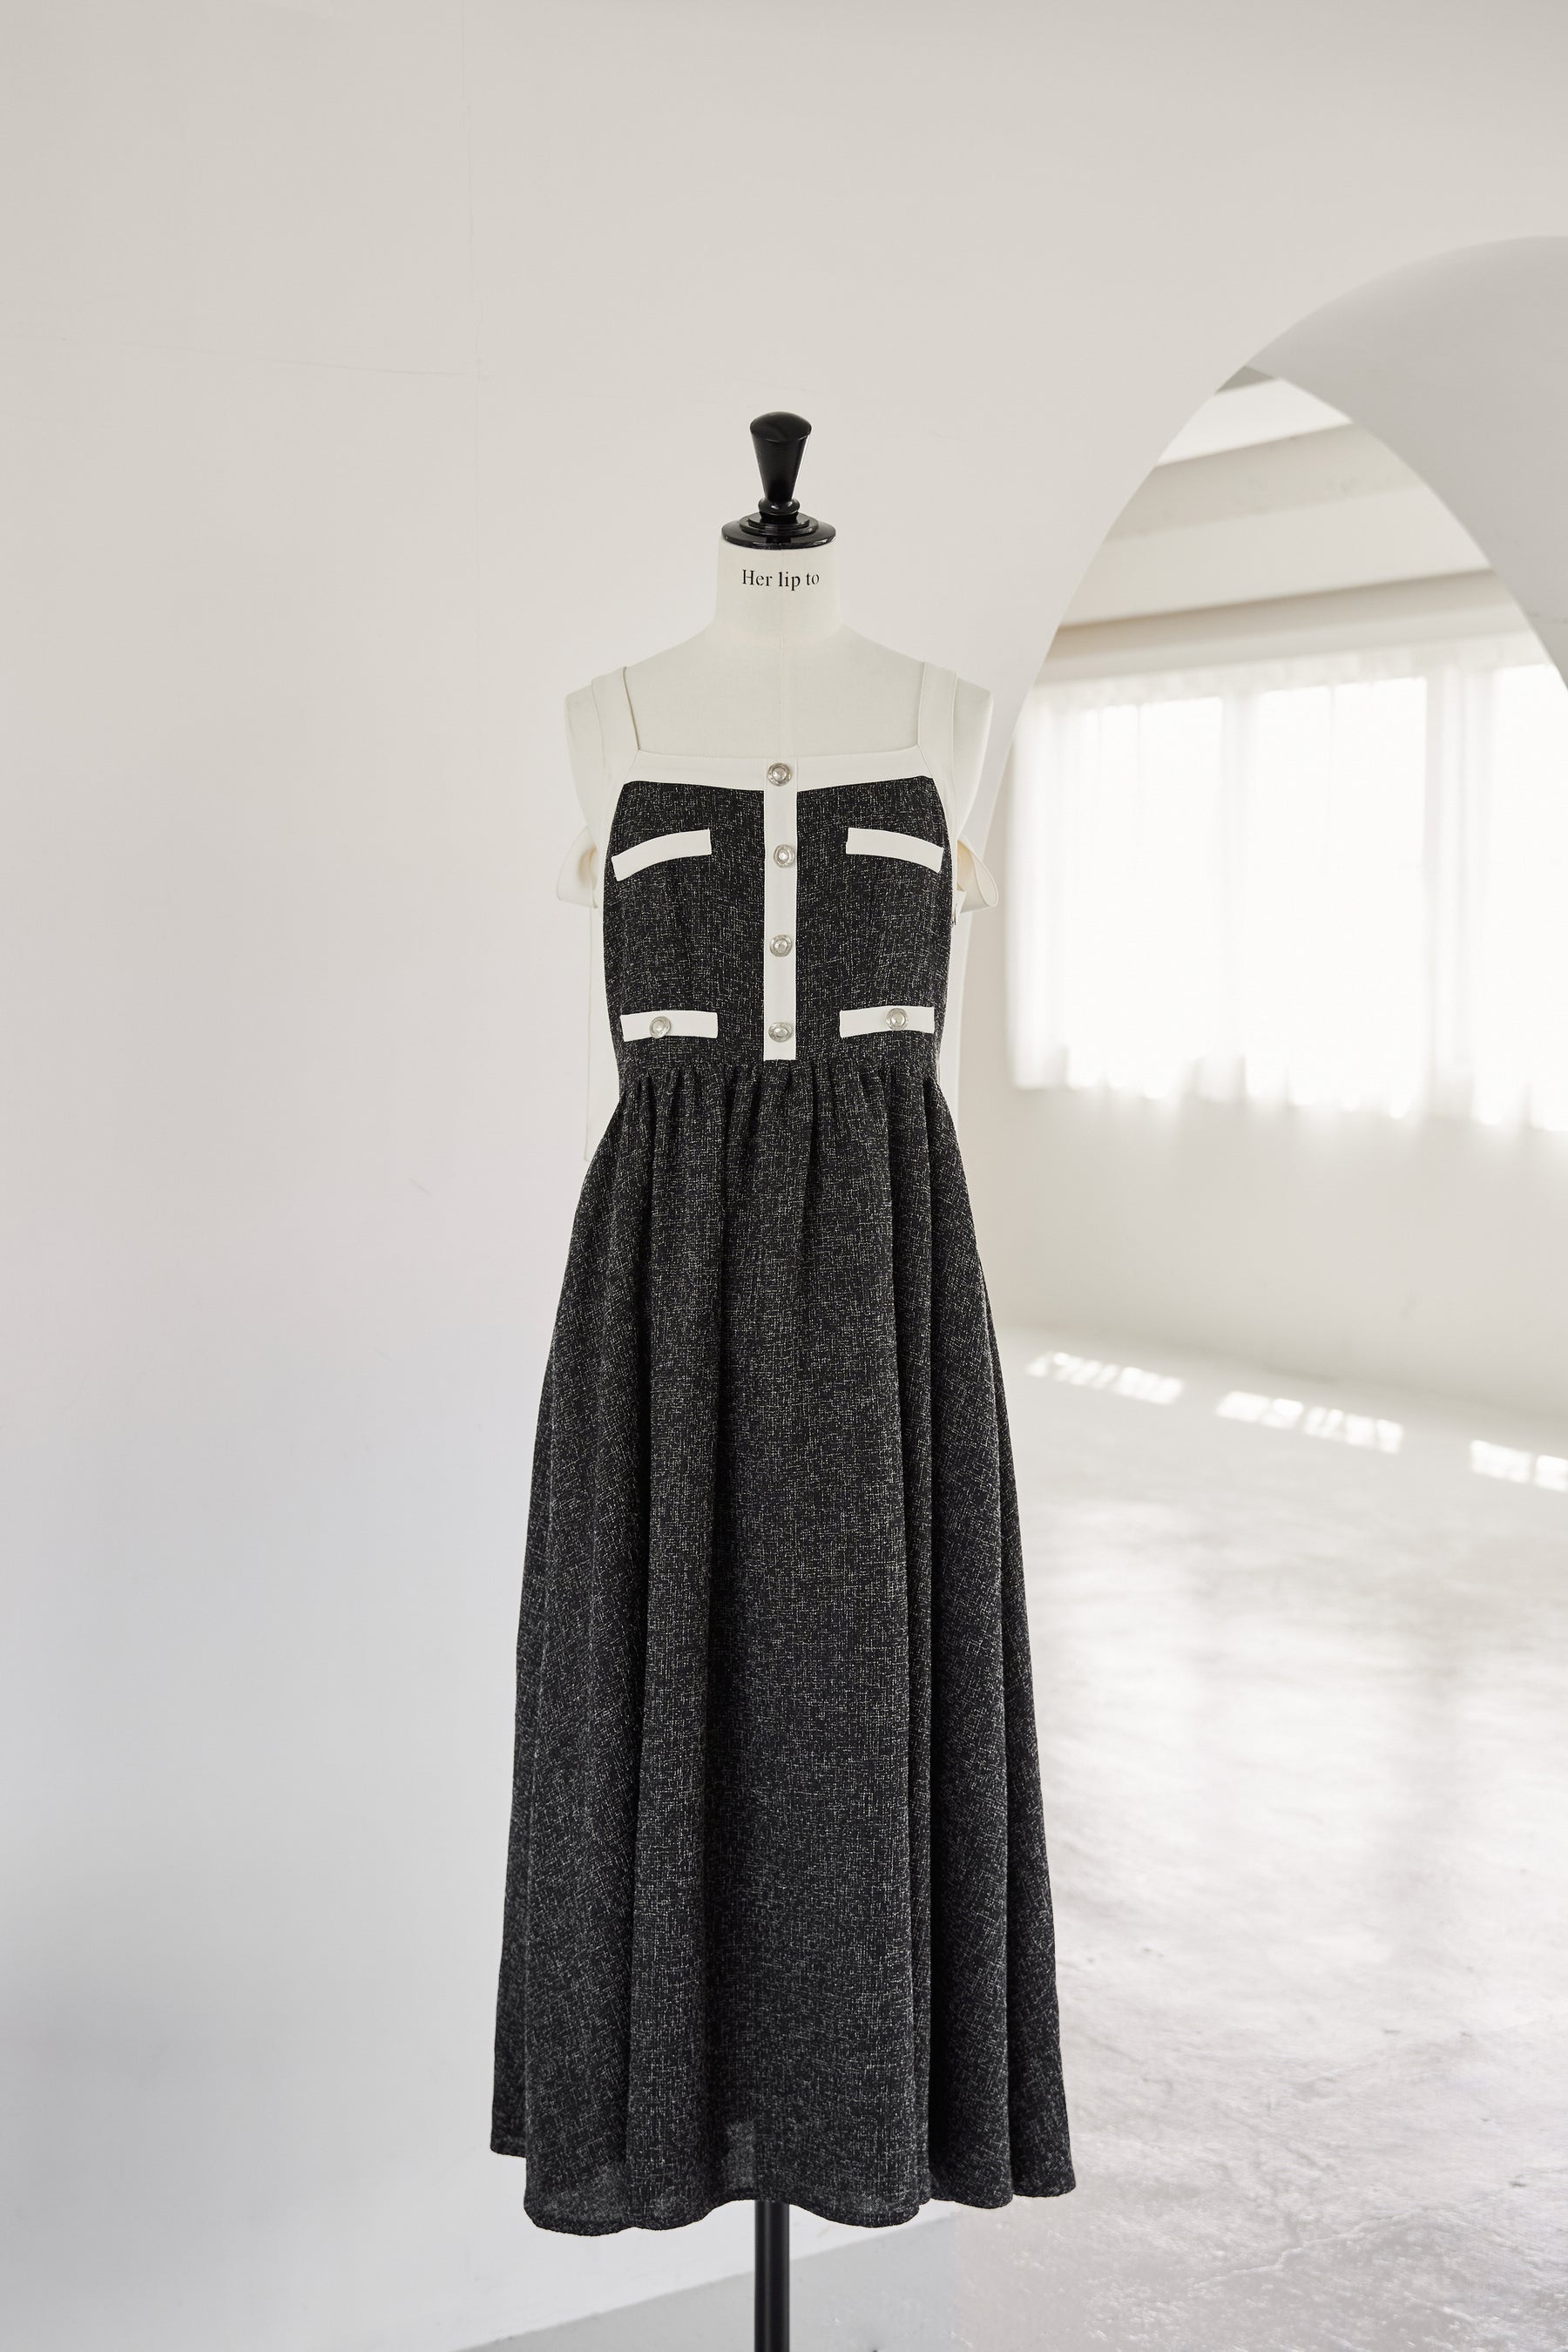 herlipto Verona Tweed Long Dress-